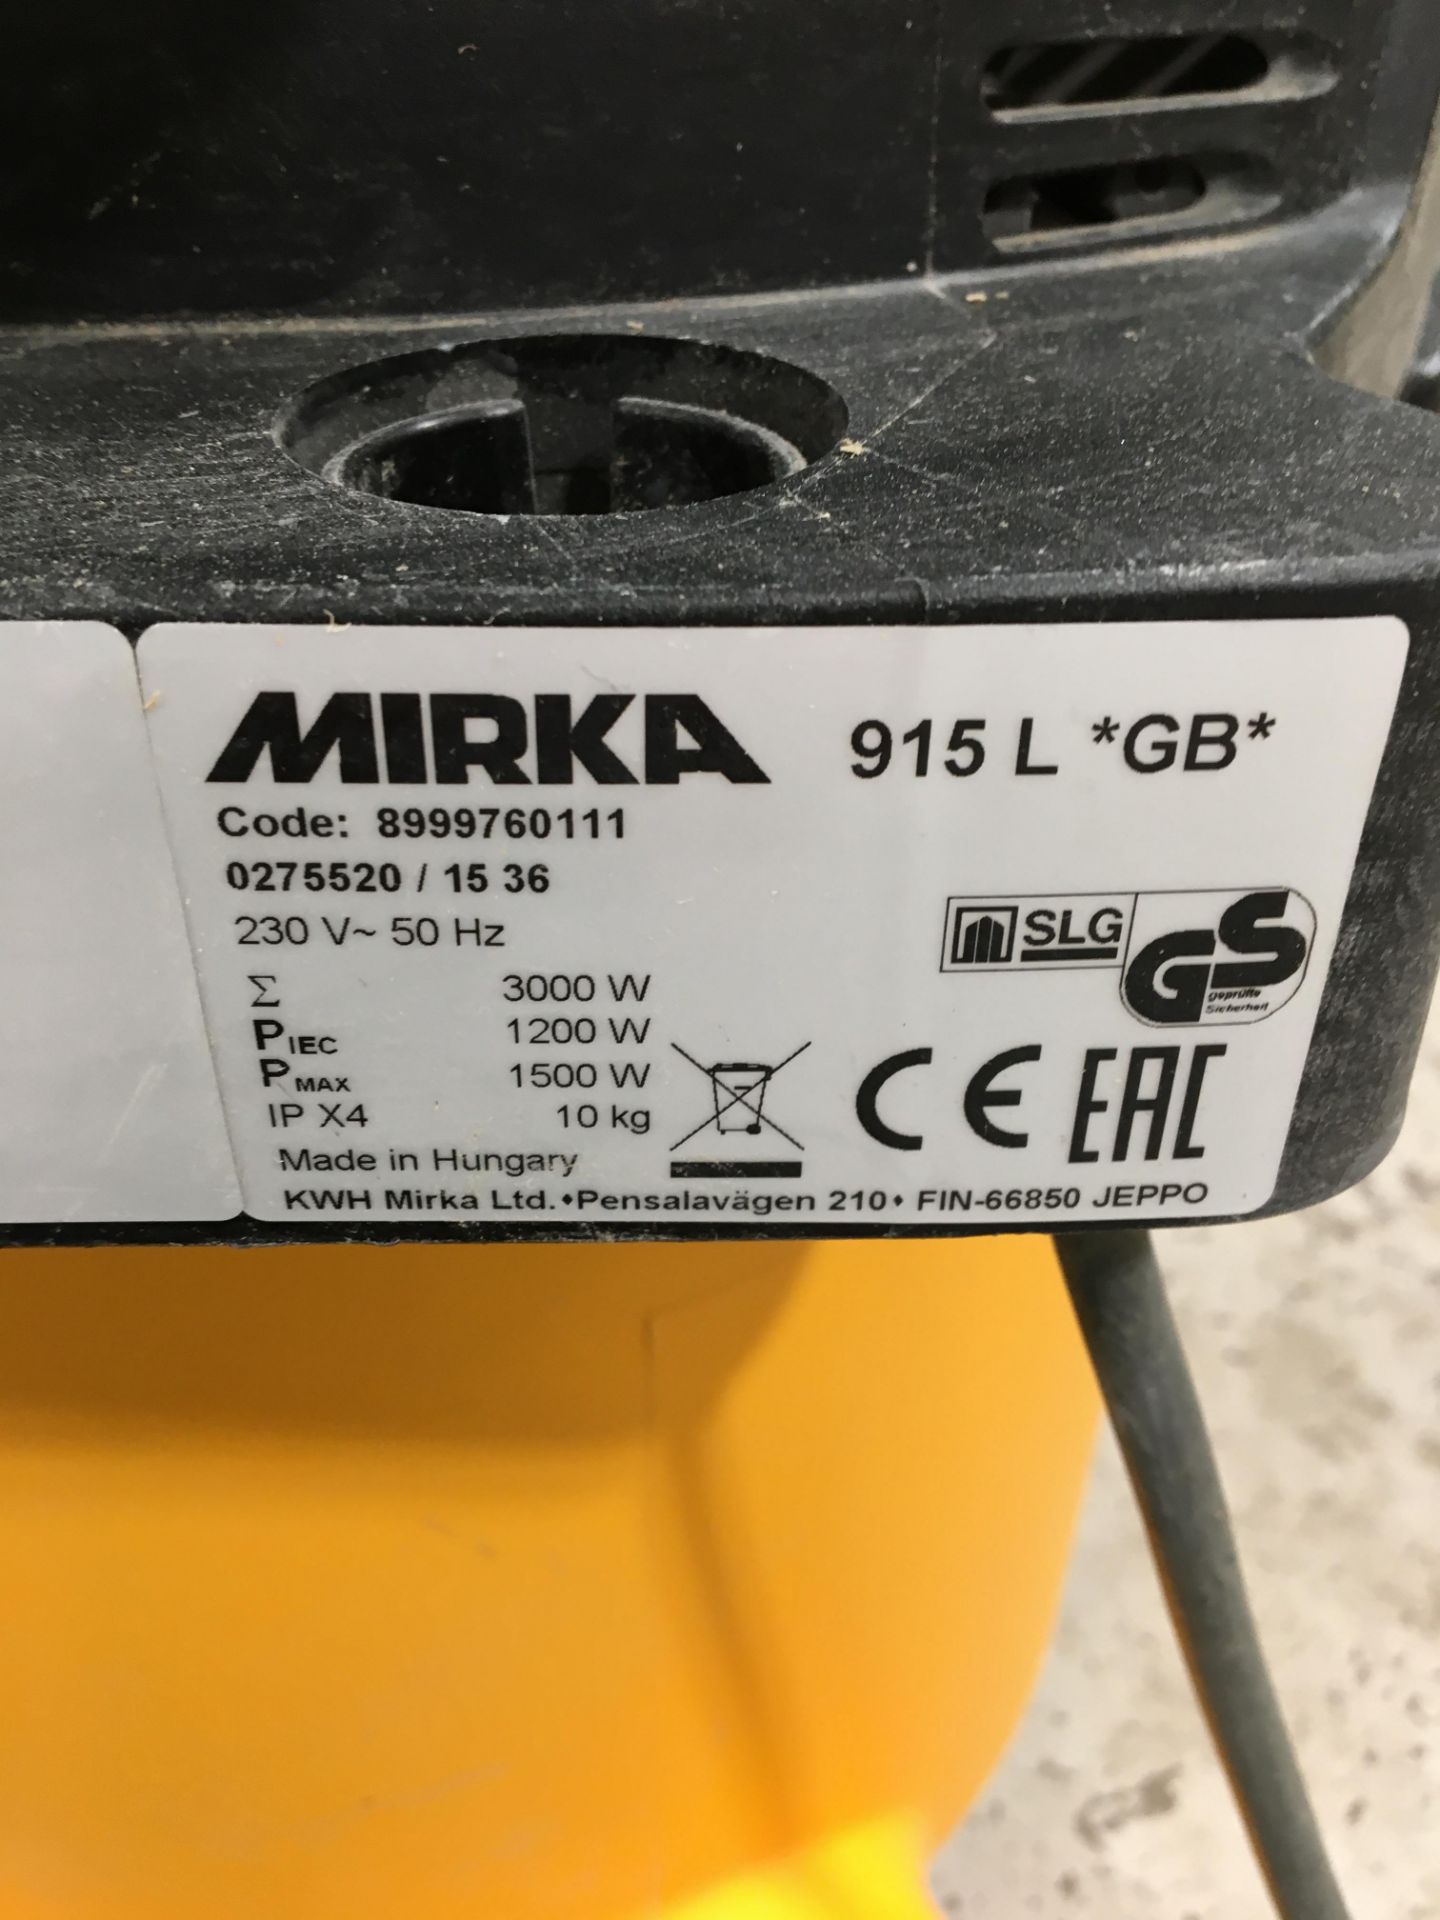 Mirka 915 L *GB* 230v vacuum dust extraction unit, Serial No. 0275520/1536 (No flexi hose) ( - Image 2 of 2